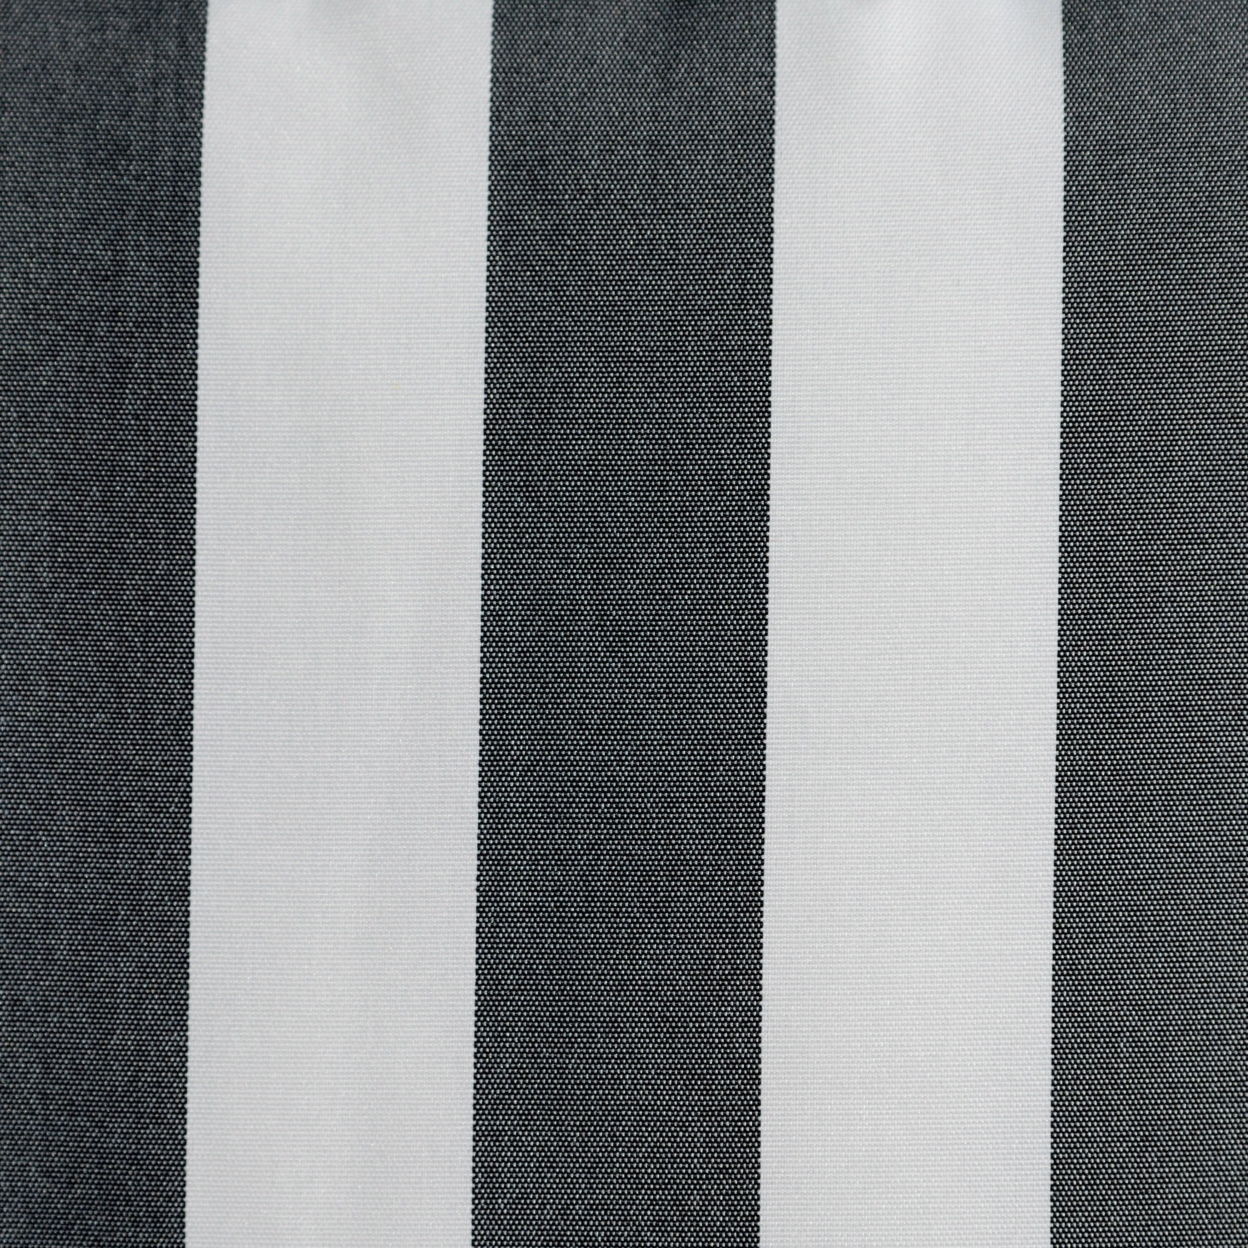 Coronado Outdoor Stripe Water Resistant Rectangular Throw Pillow - Black/white, Set Of 2